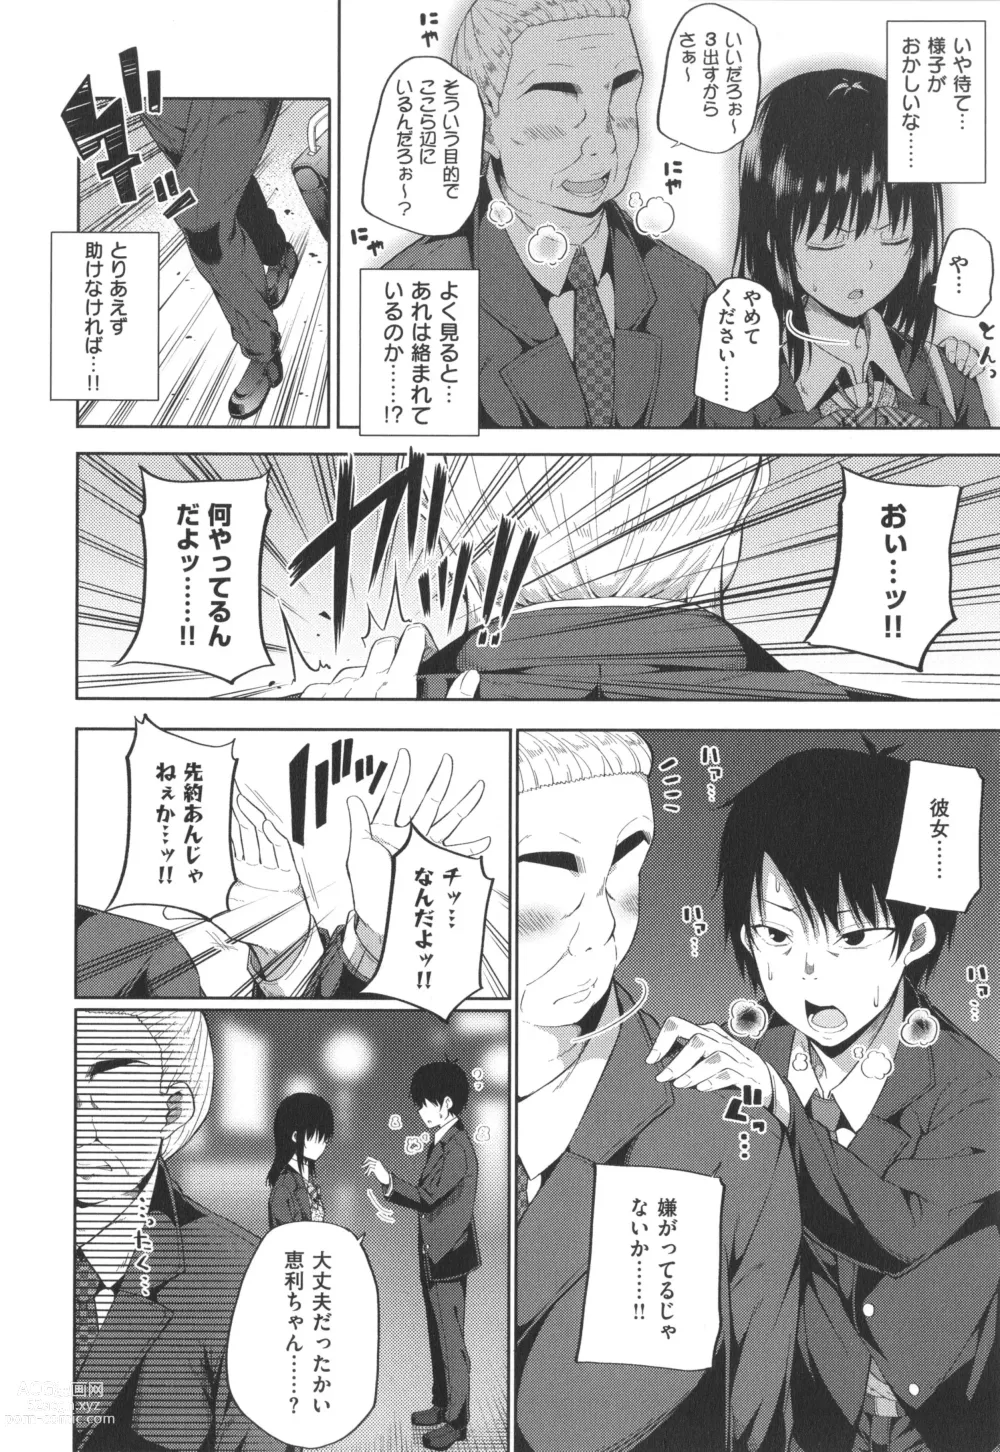 Page 19 of manga Enkou Shoujo wa Suki Desuka?